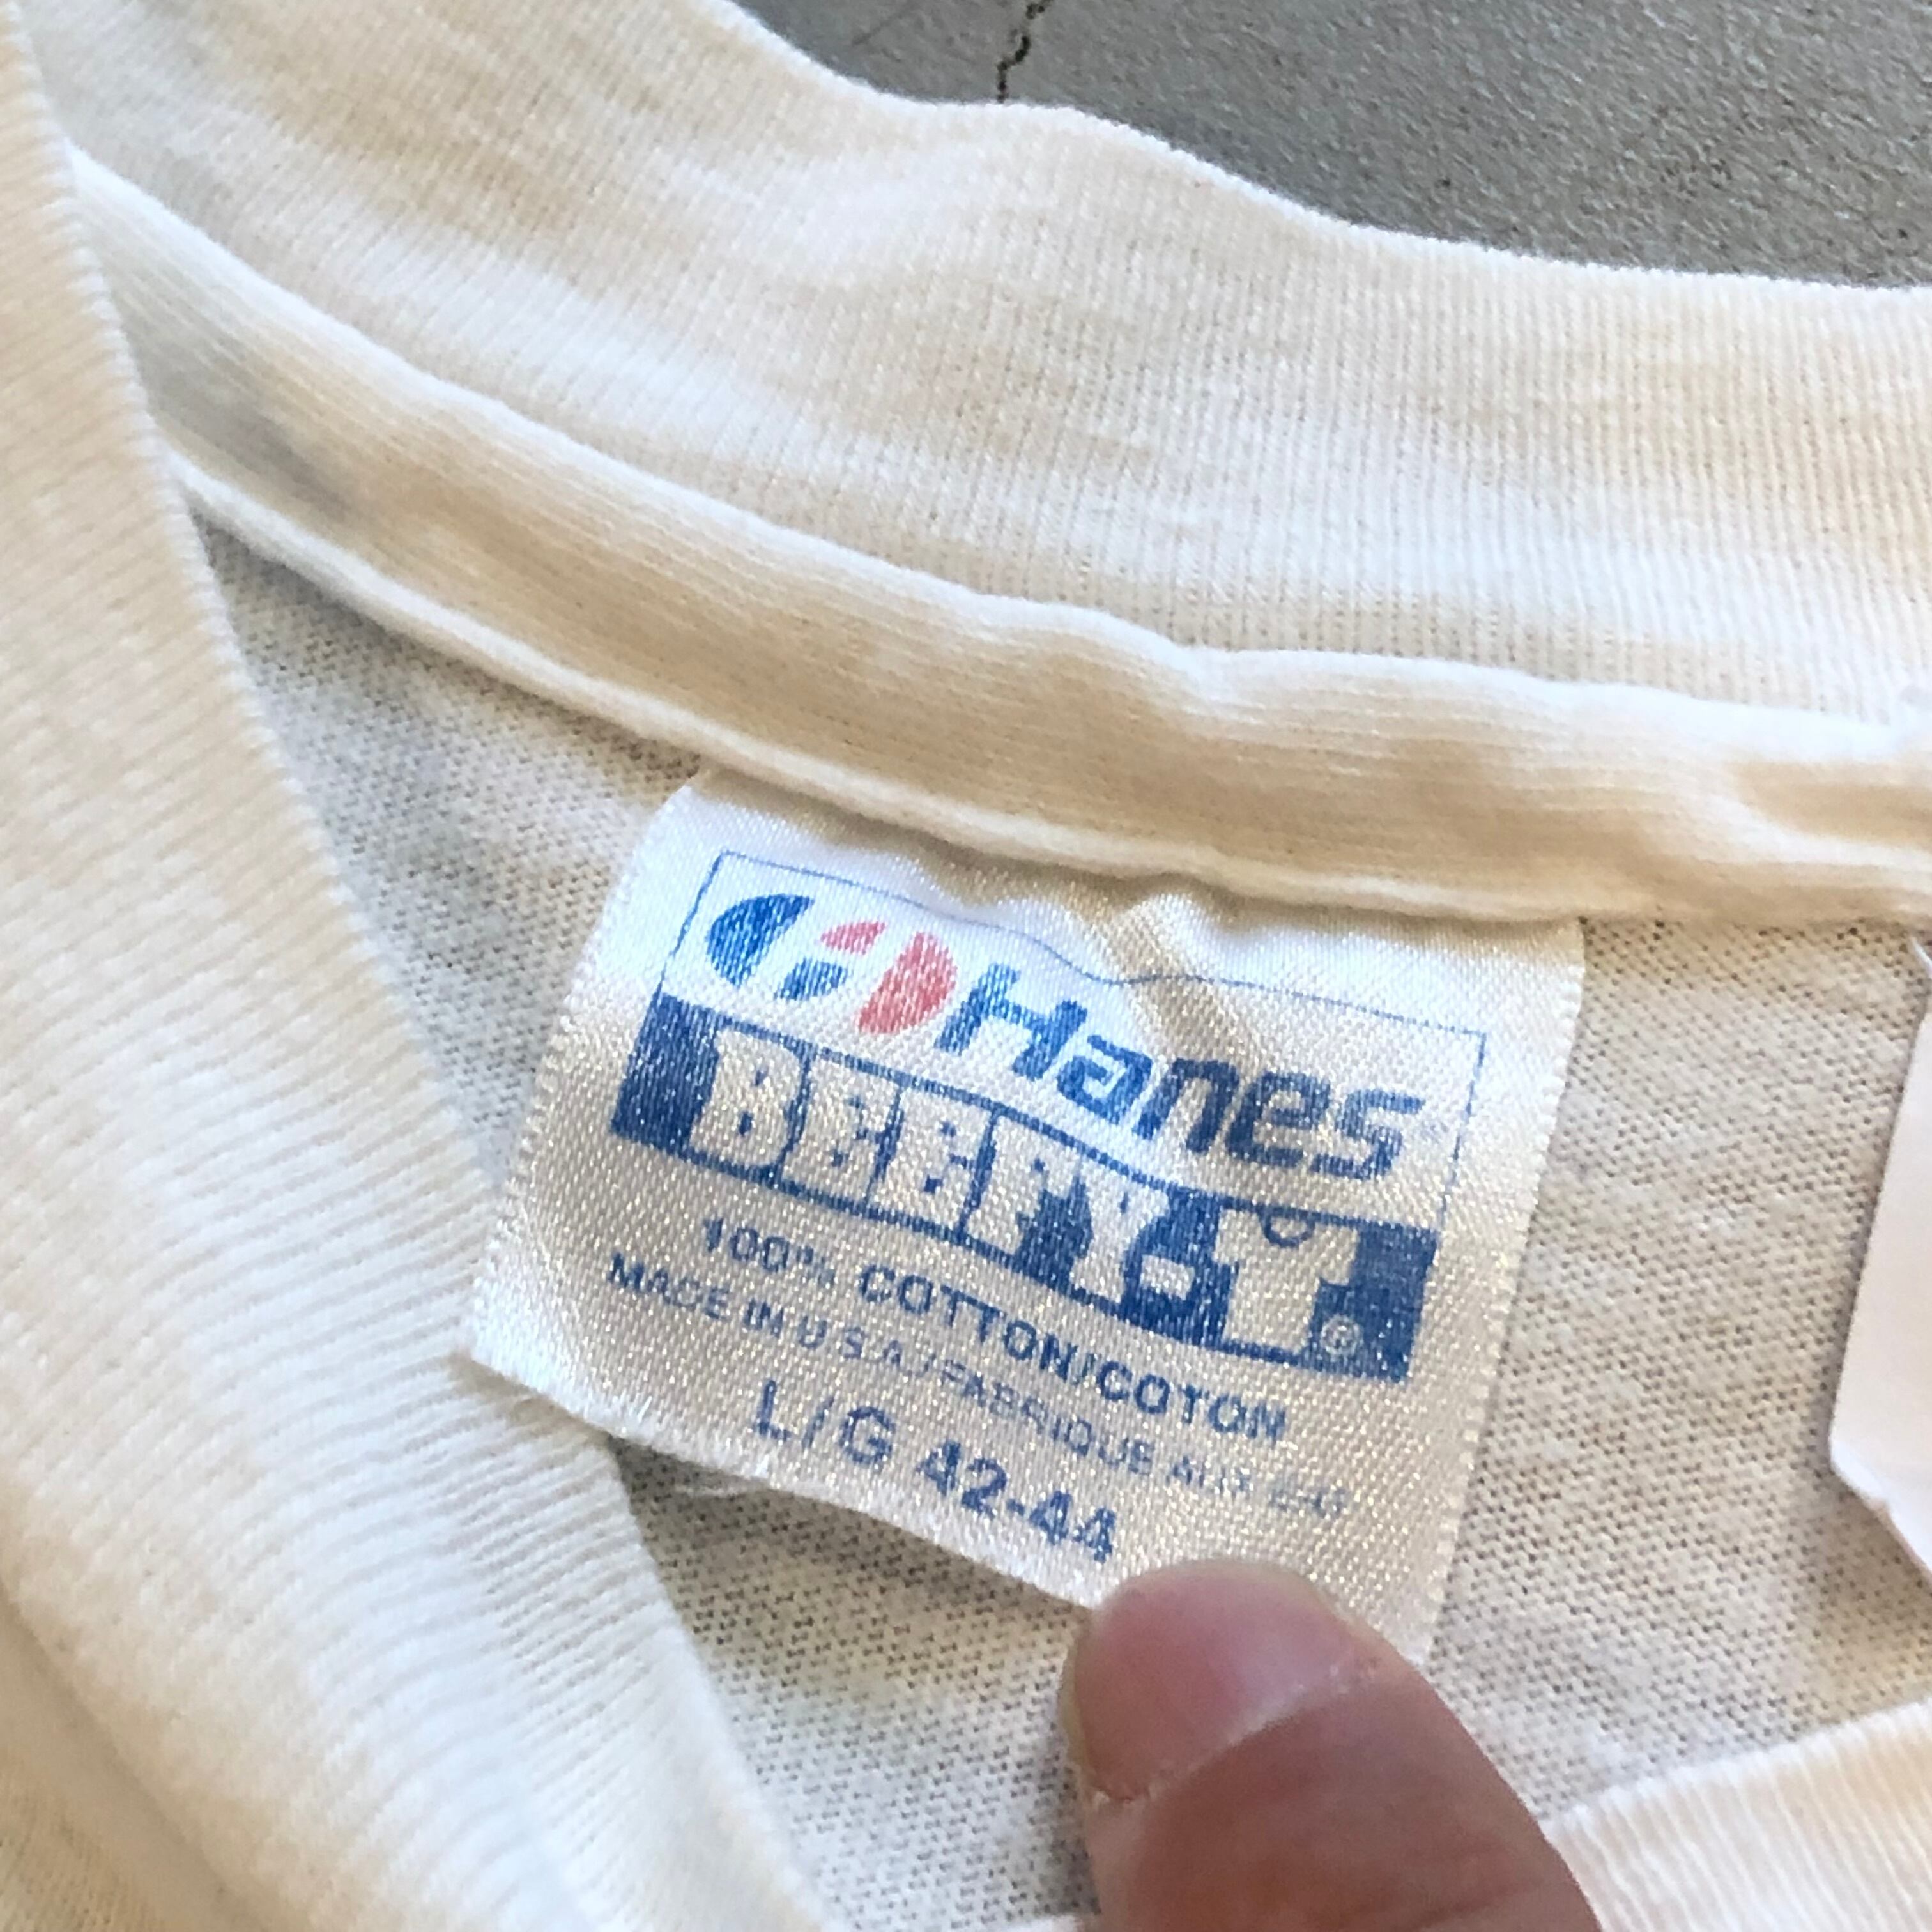 80s Hutspah cotton shirt【高円寺店】